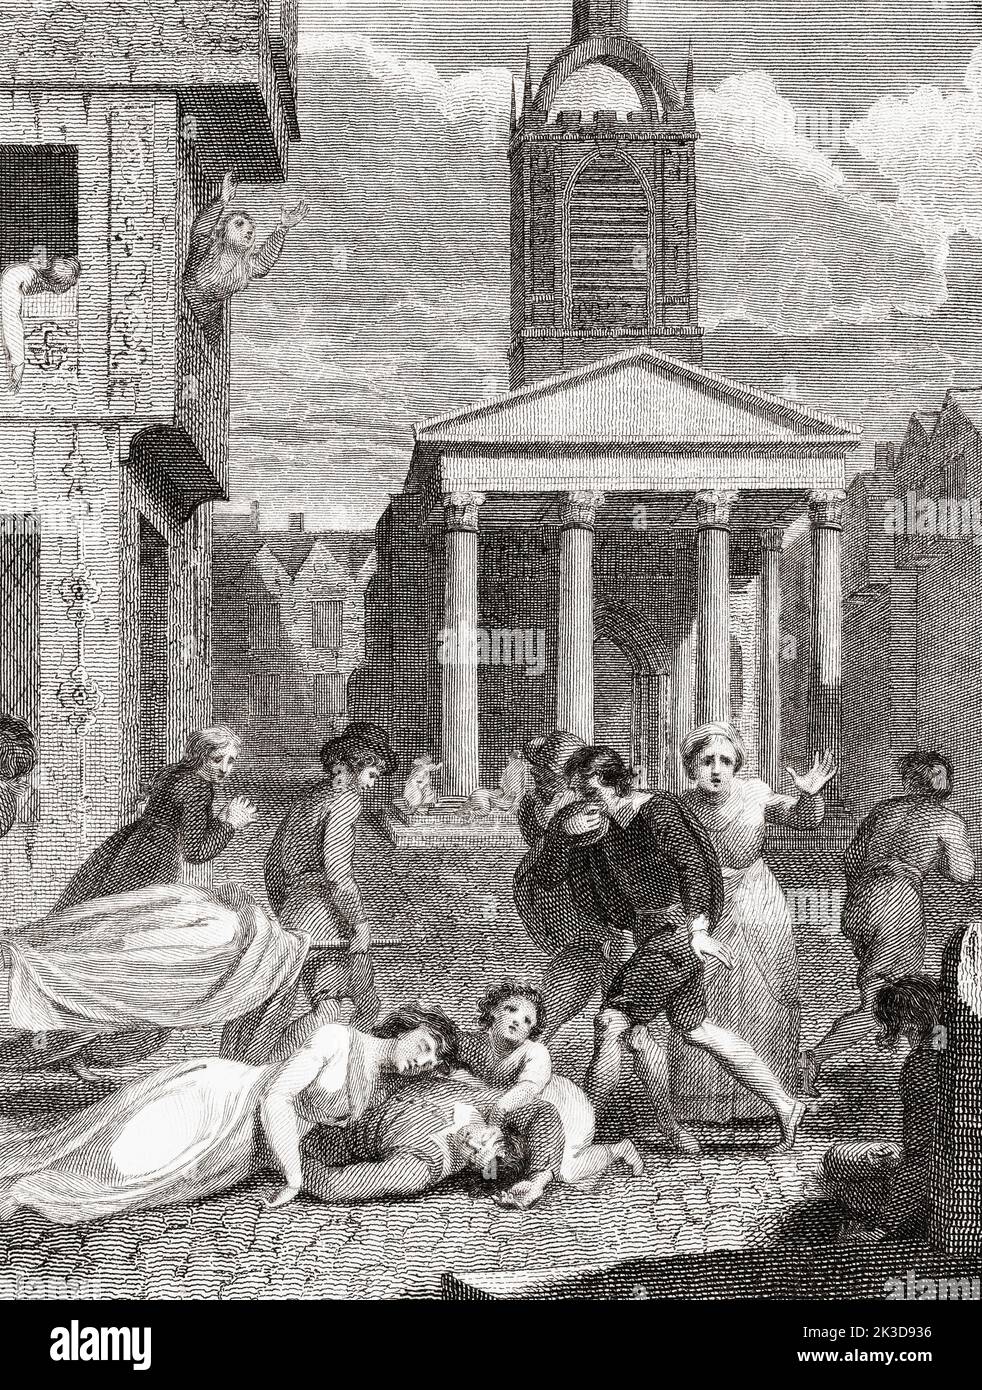 L'effetto fatale della peste del 1665. Dopo un'incisione dell'artista inglese Robert Smirke. Le cifre suggeriscono che ben 100.000 persone - un quarto della popolazione di Londra - sono morte durante i 18 mesi in cui la peste infuriava la capitale. Foto Stock